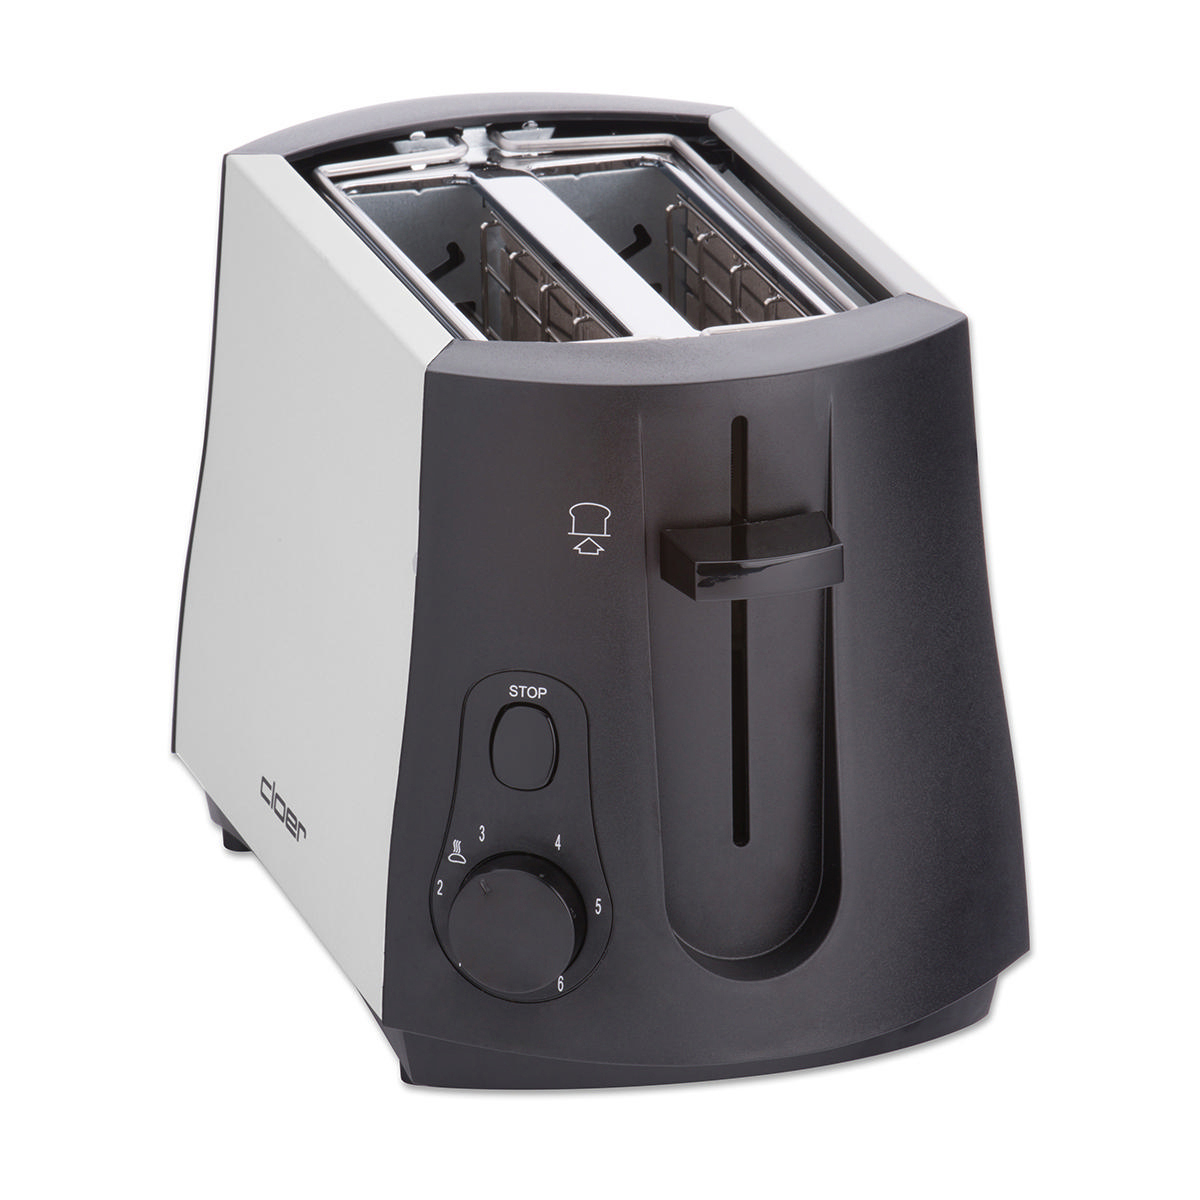 CLOER 3410 Toaster Schwarz Schlitze: Watt, (825 2)